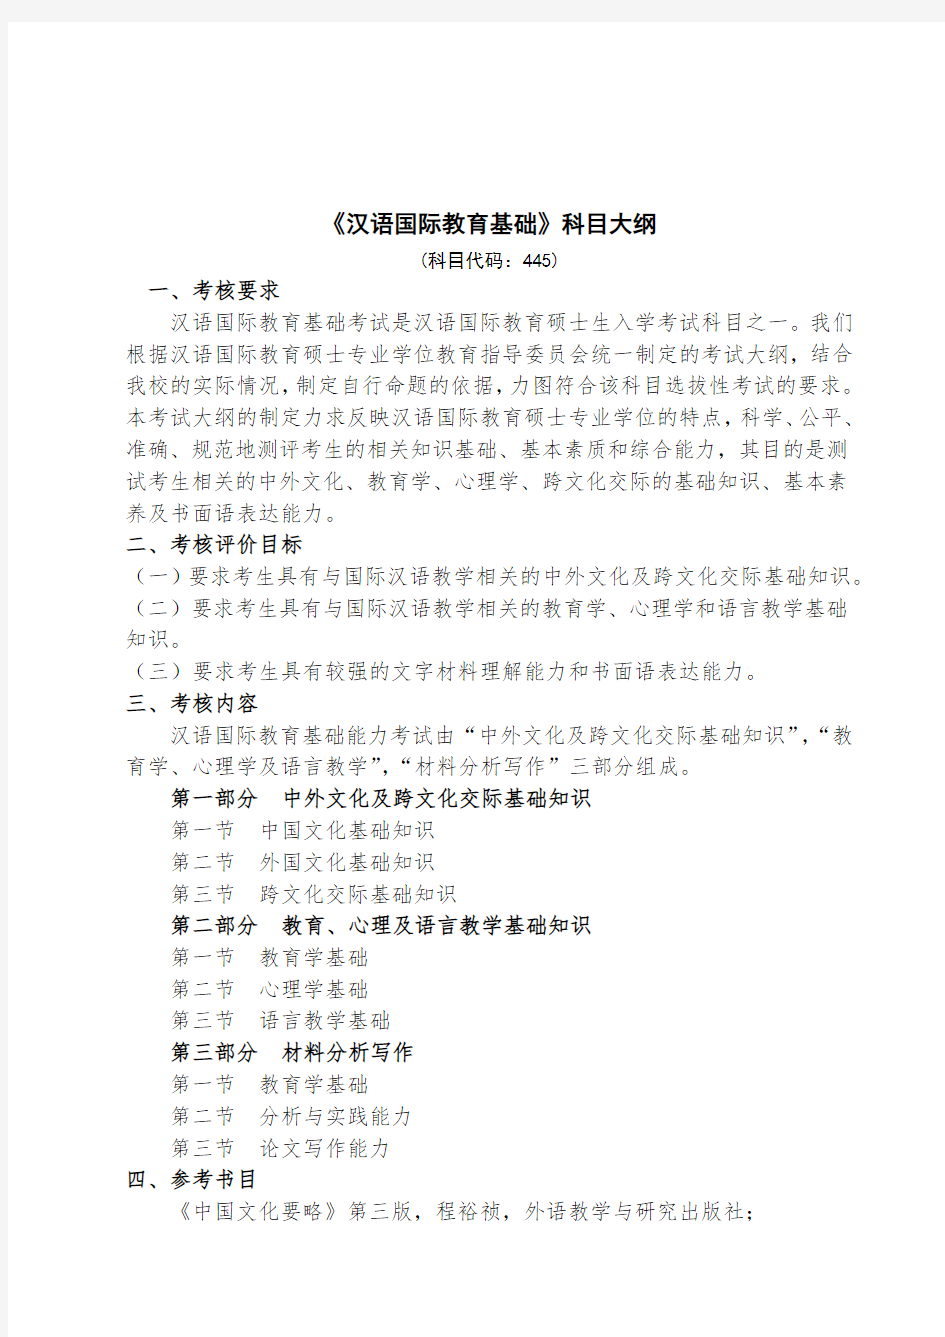 西北师范大学445 汉语国际教育基础考试大纲(初试科目)